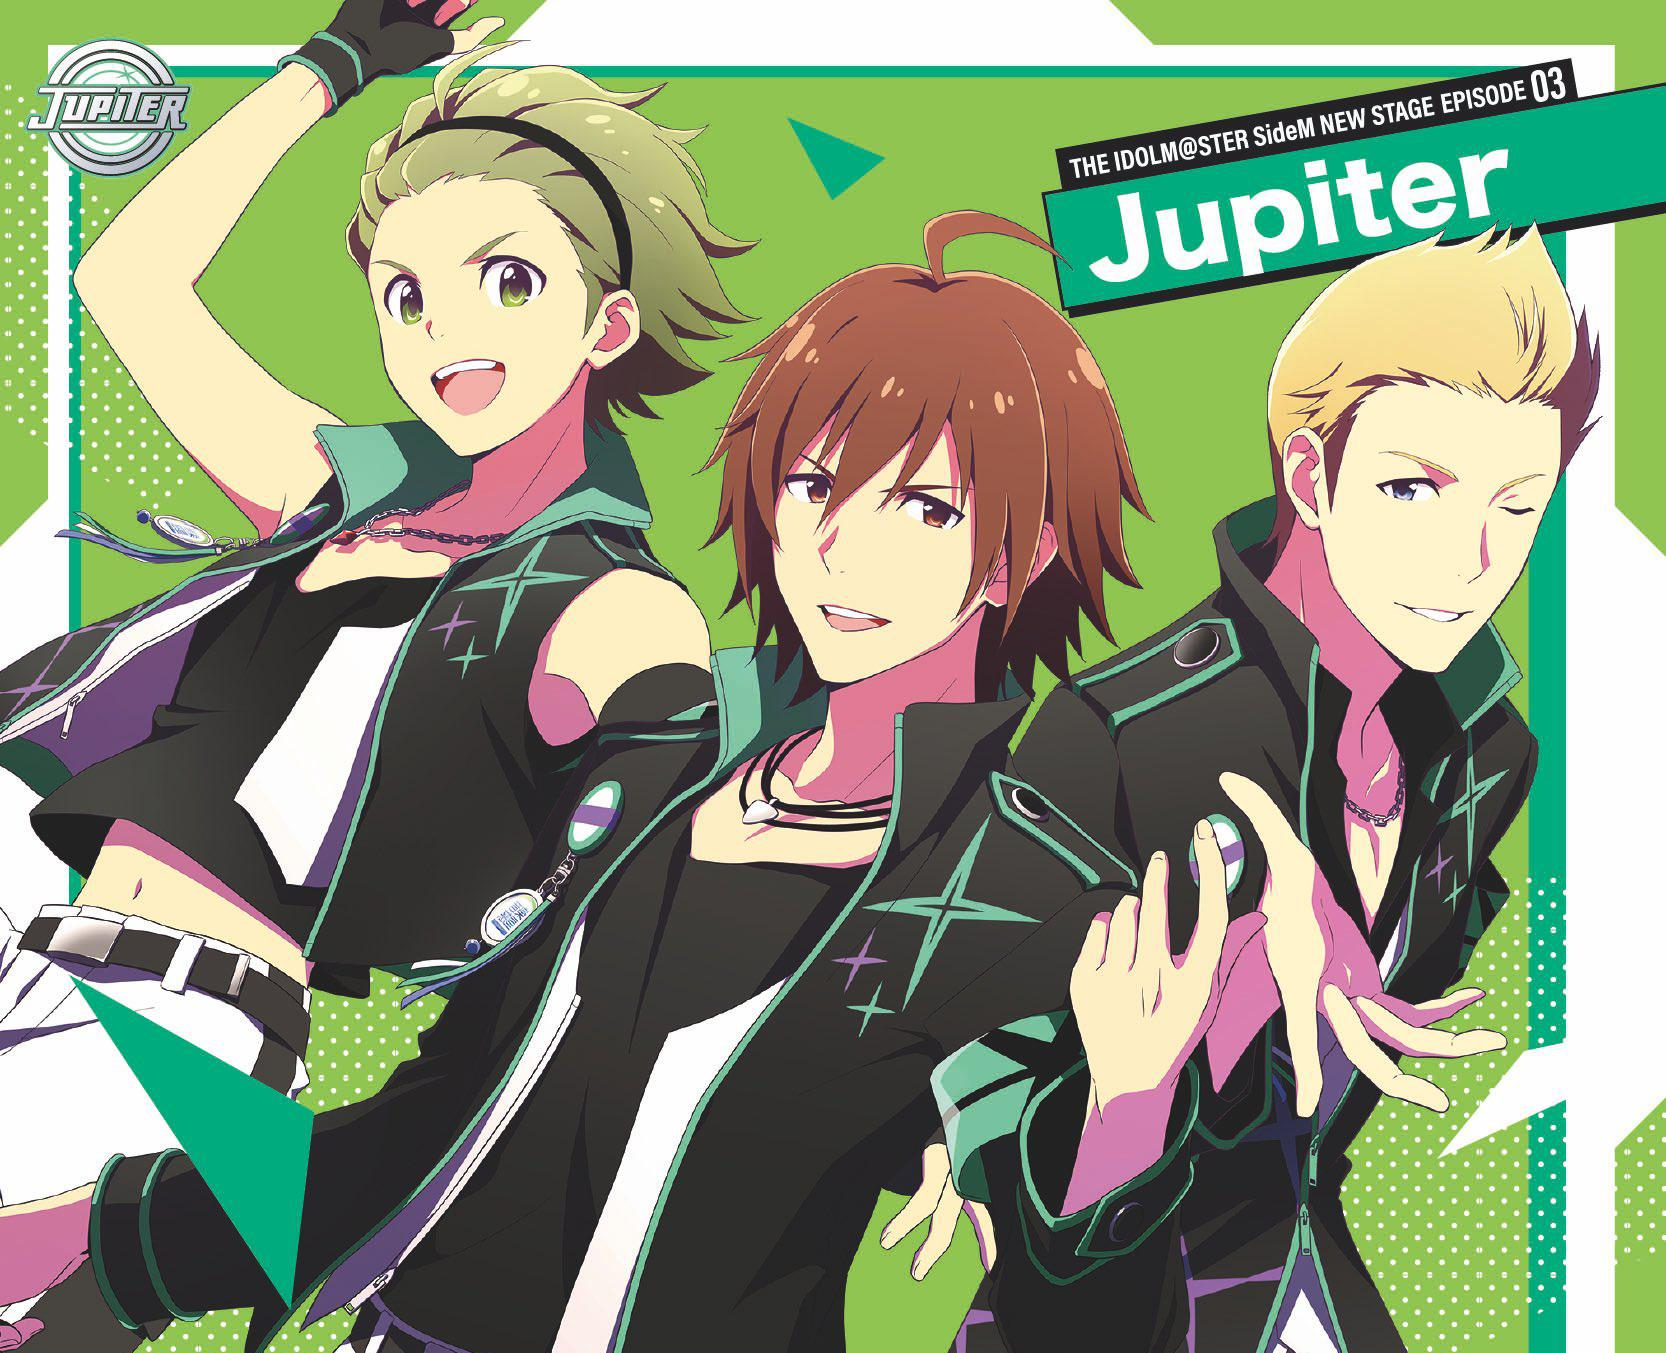 Jupiter - 歌手- 网易云音乐